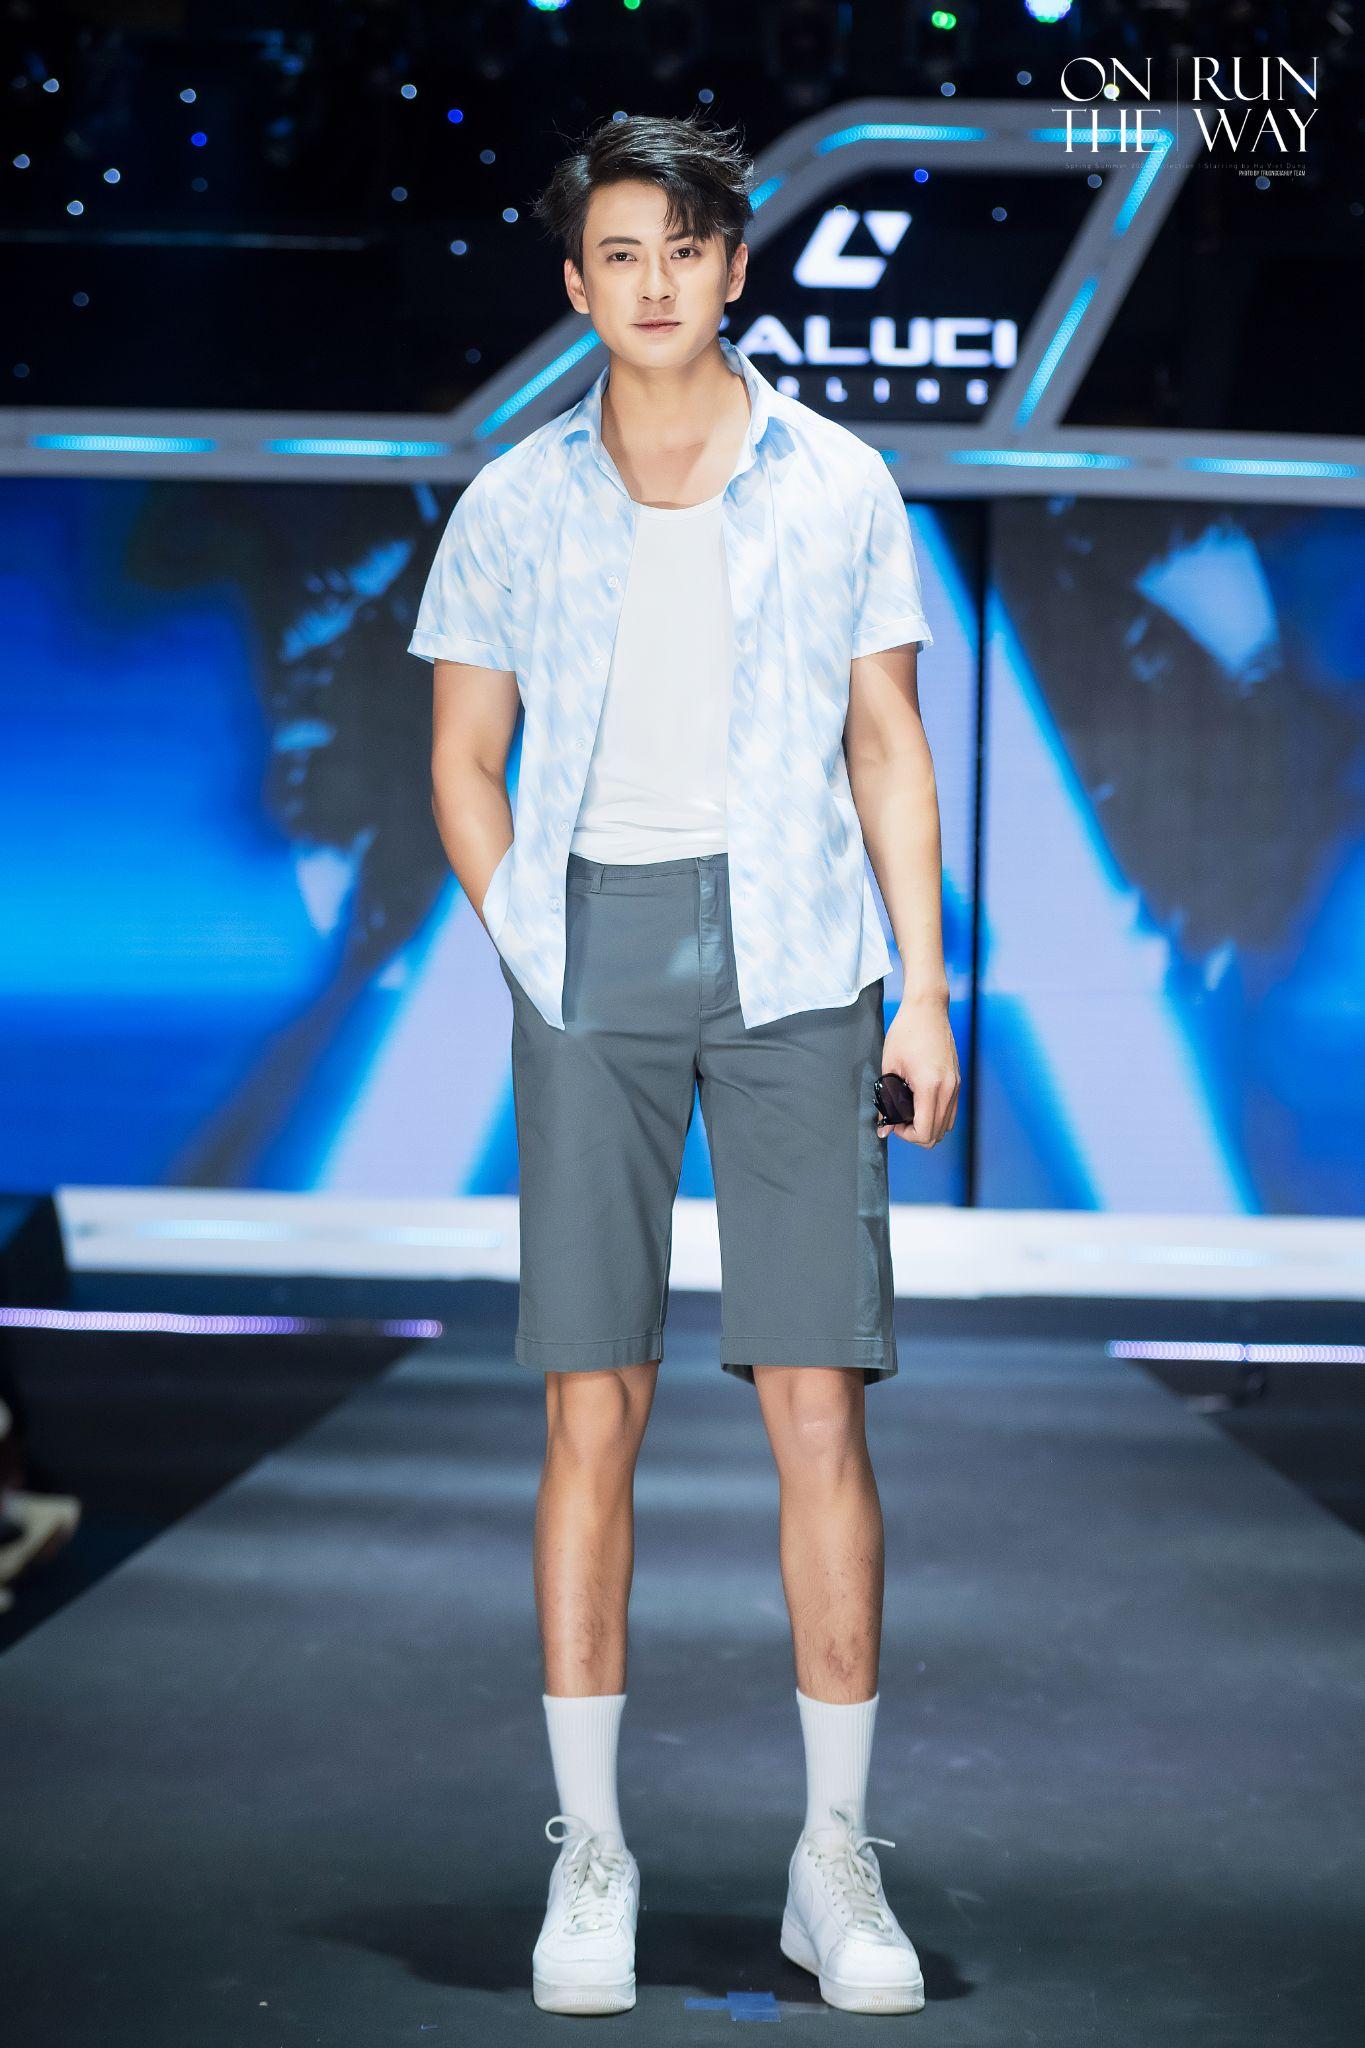 Caluci Fashion Show 2023: Noo Phước Thịnh, Hà Việt Dũng cùng dàn mẫu nam khuấy động tại Trung tâm Hội nghị Quốc gia - Ảnh 10.